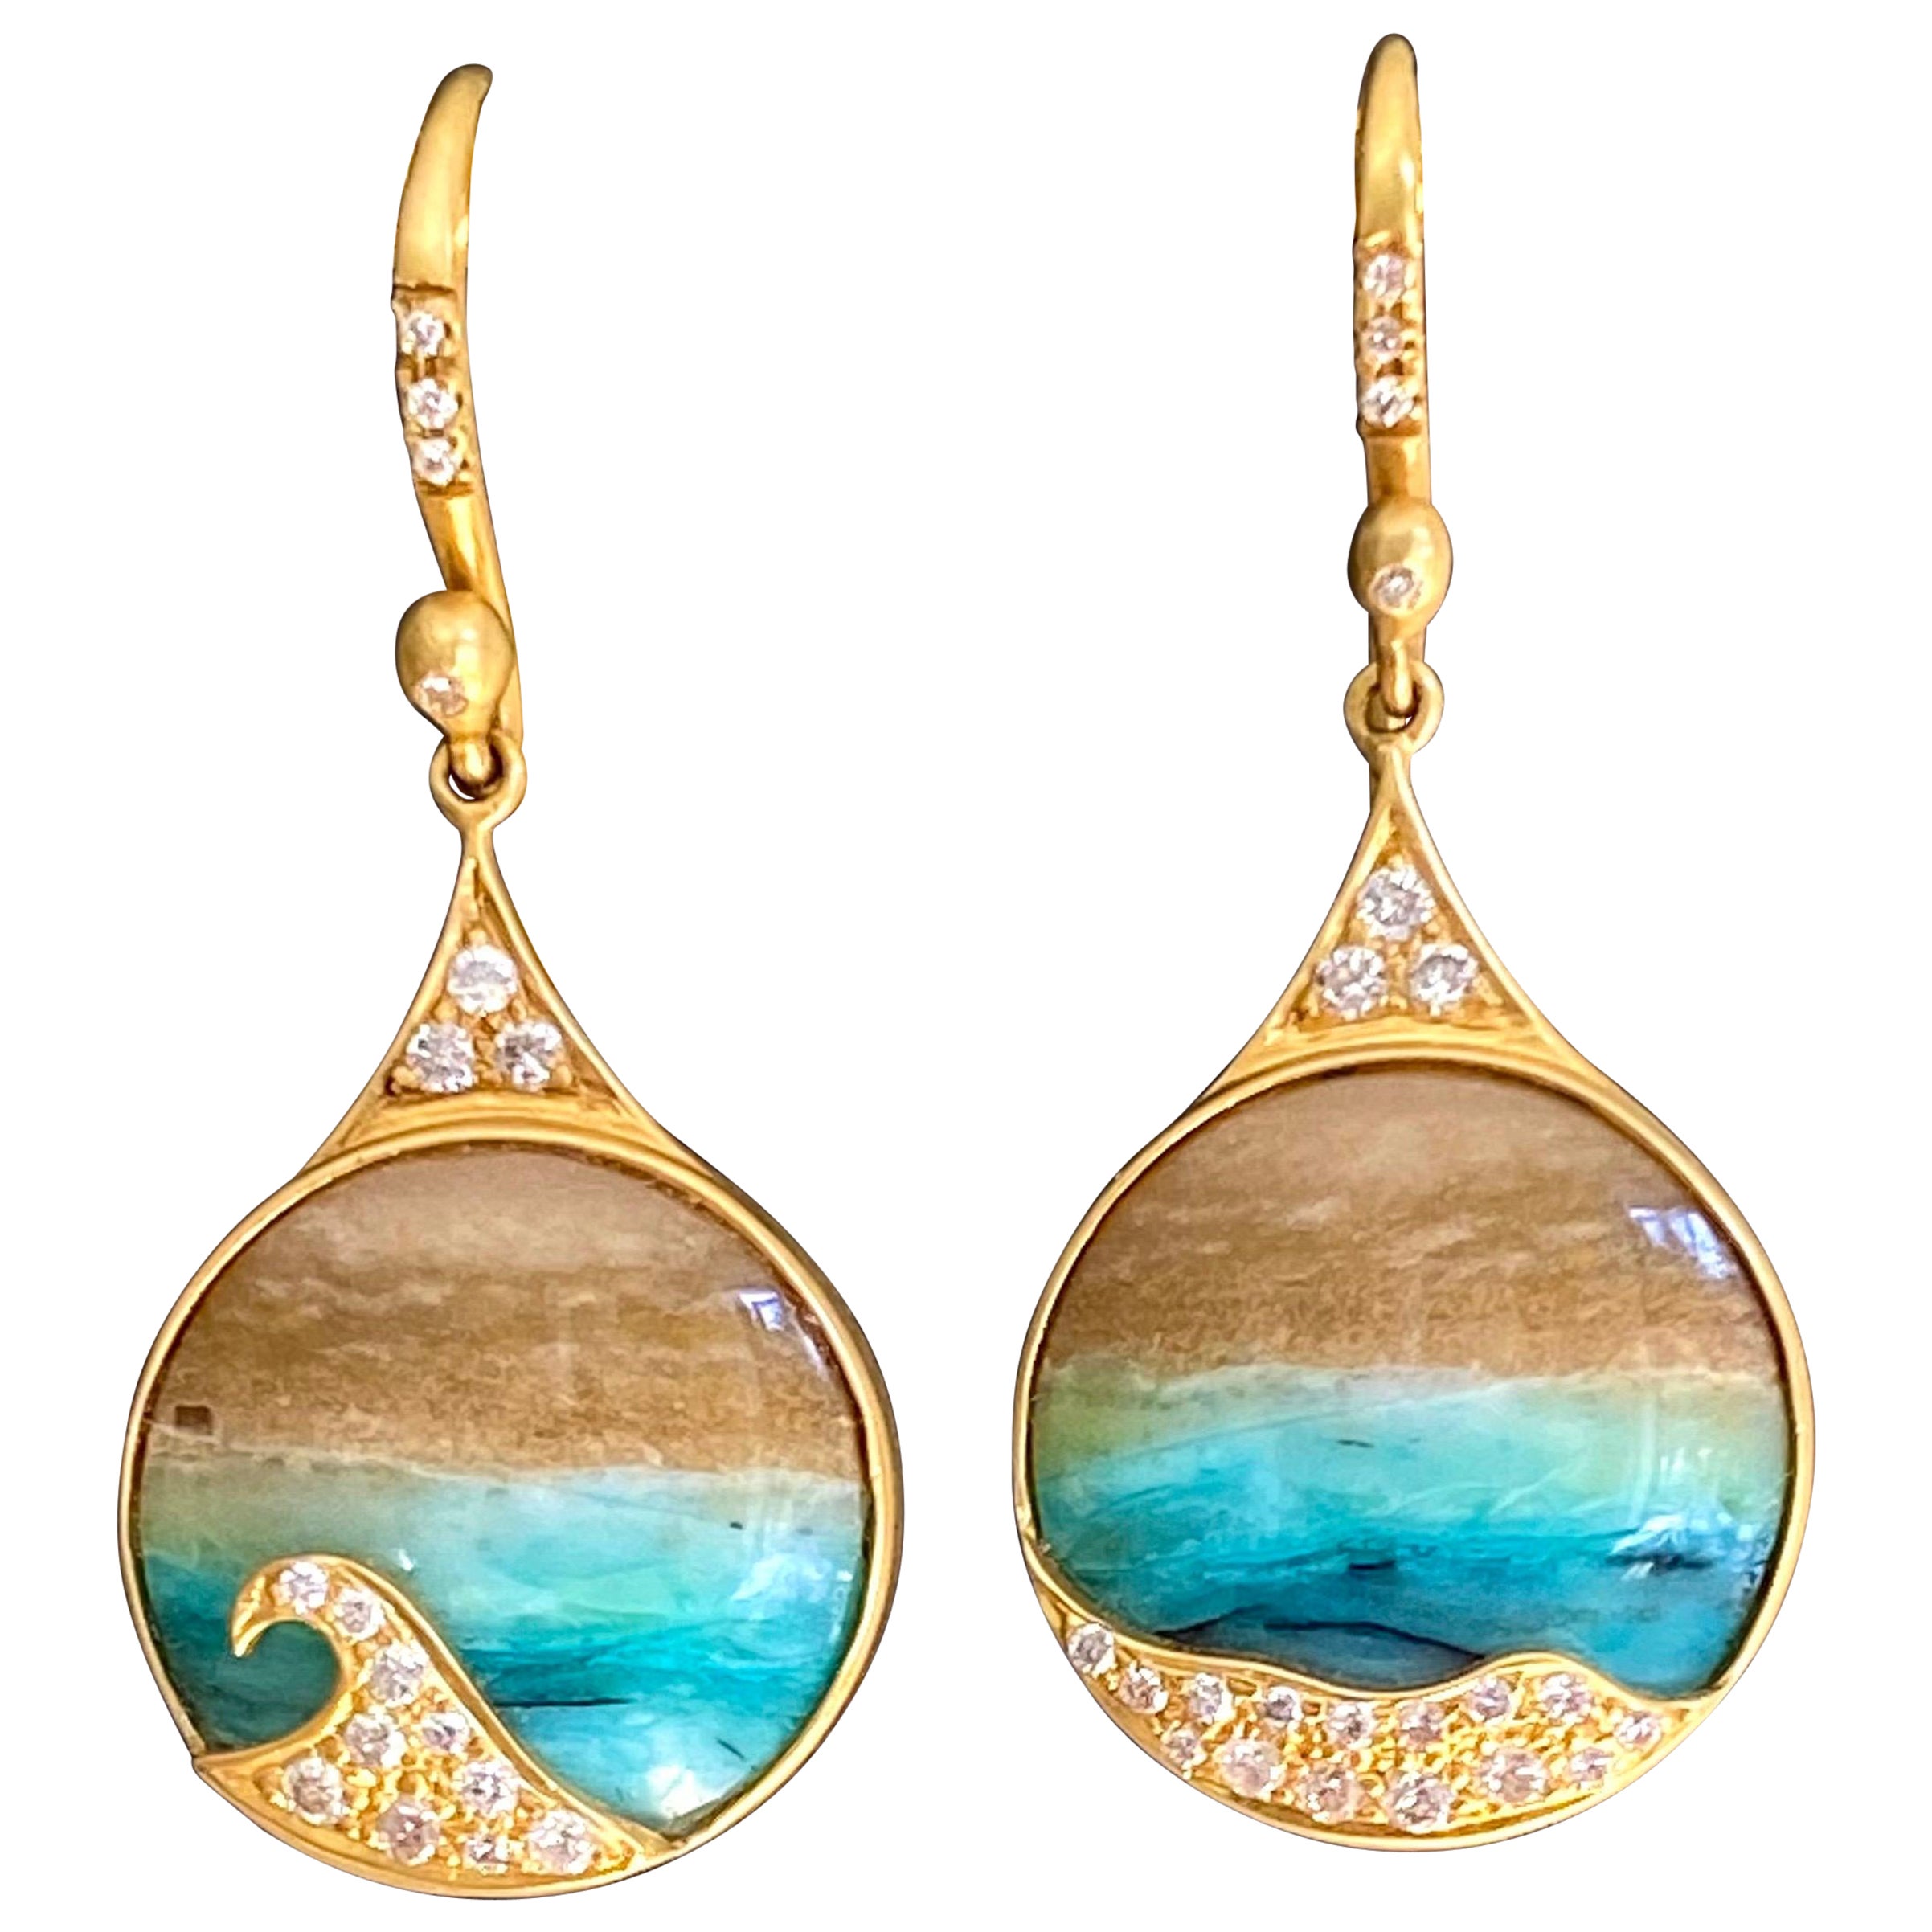 Opalized Wood, Diamonds, 18kt Gold Earrings by Lauren Harper